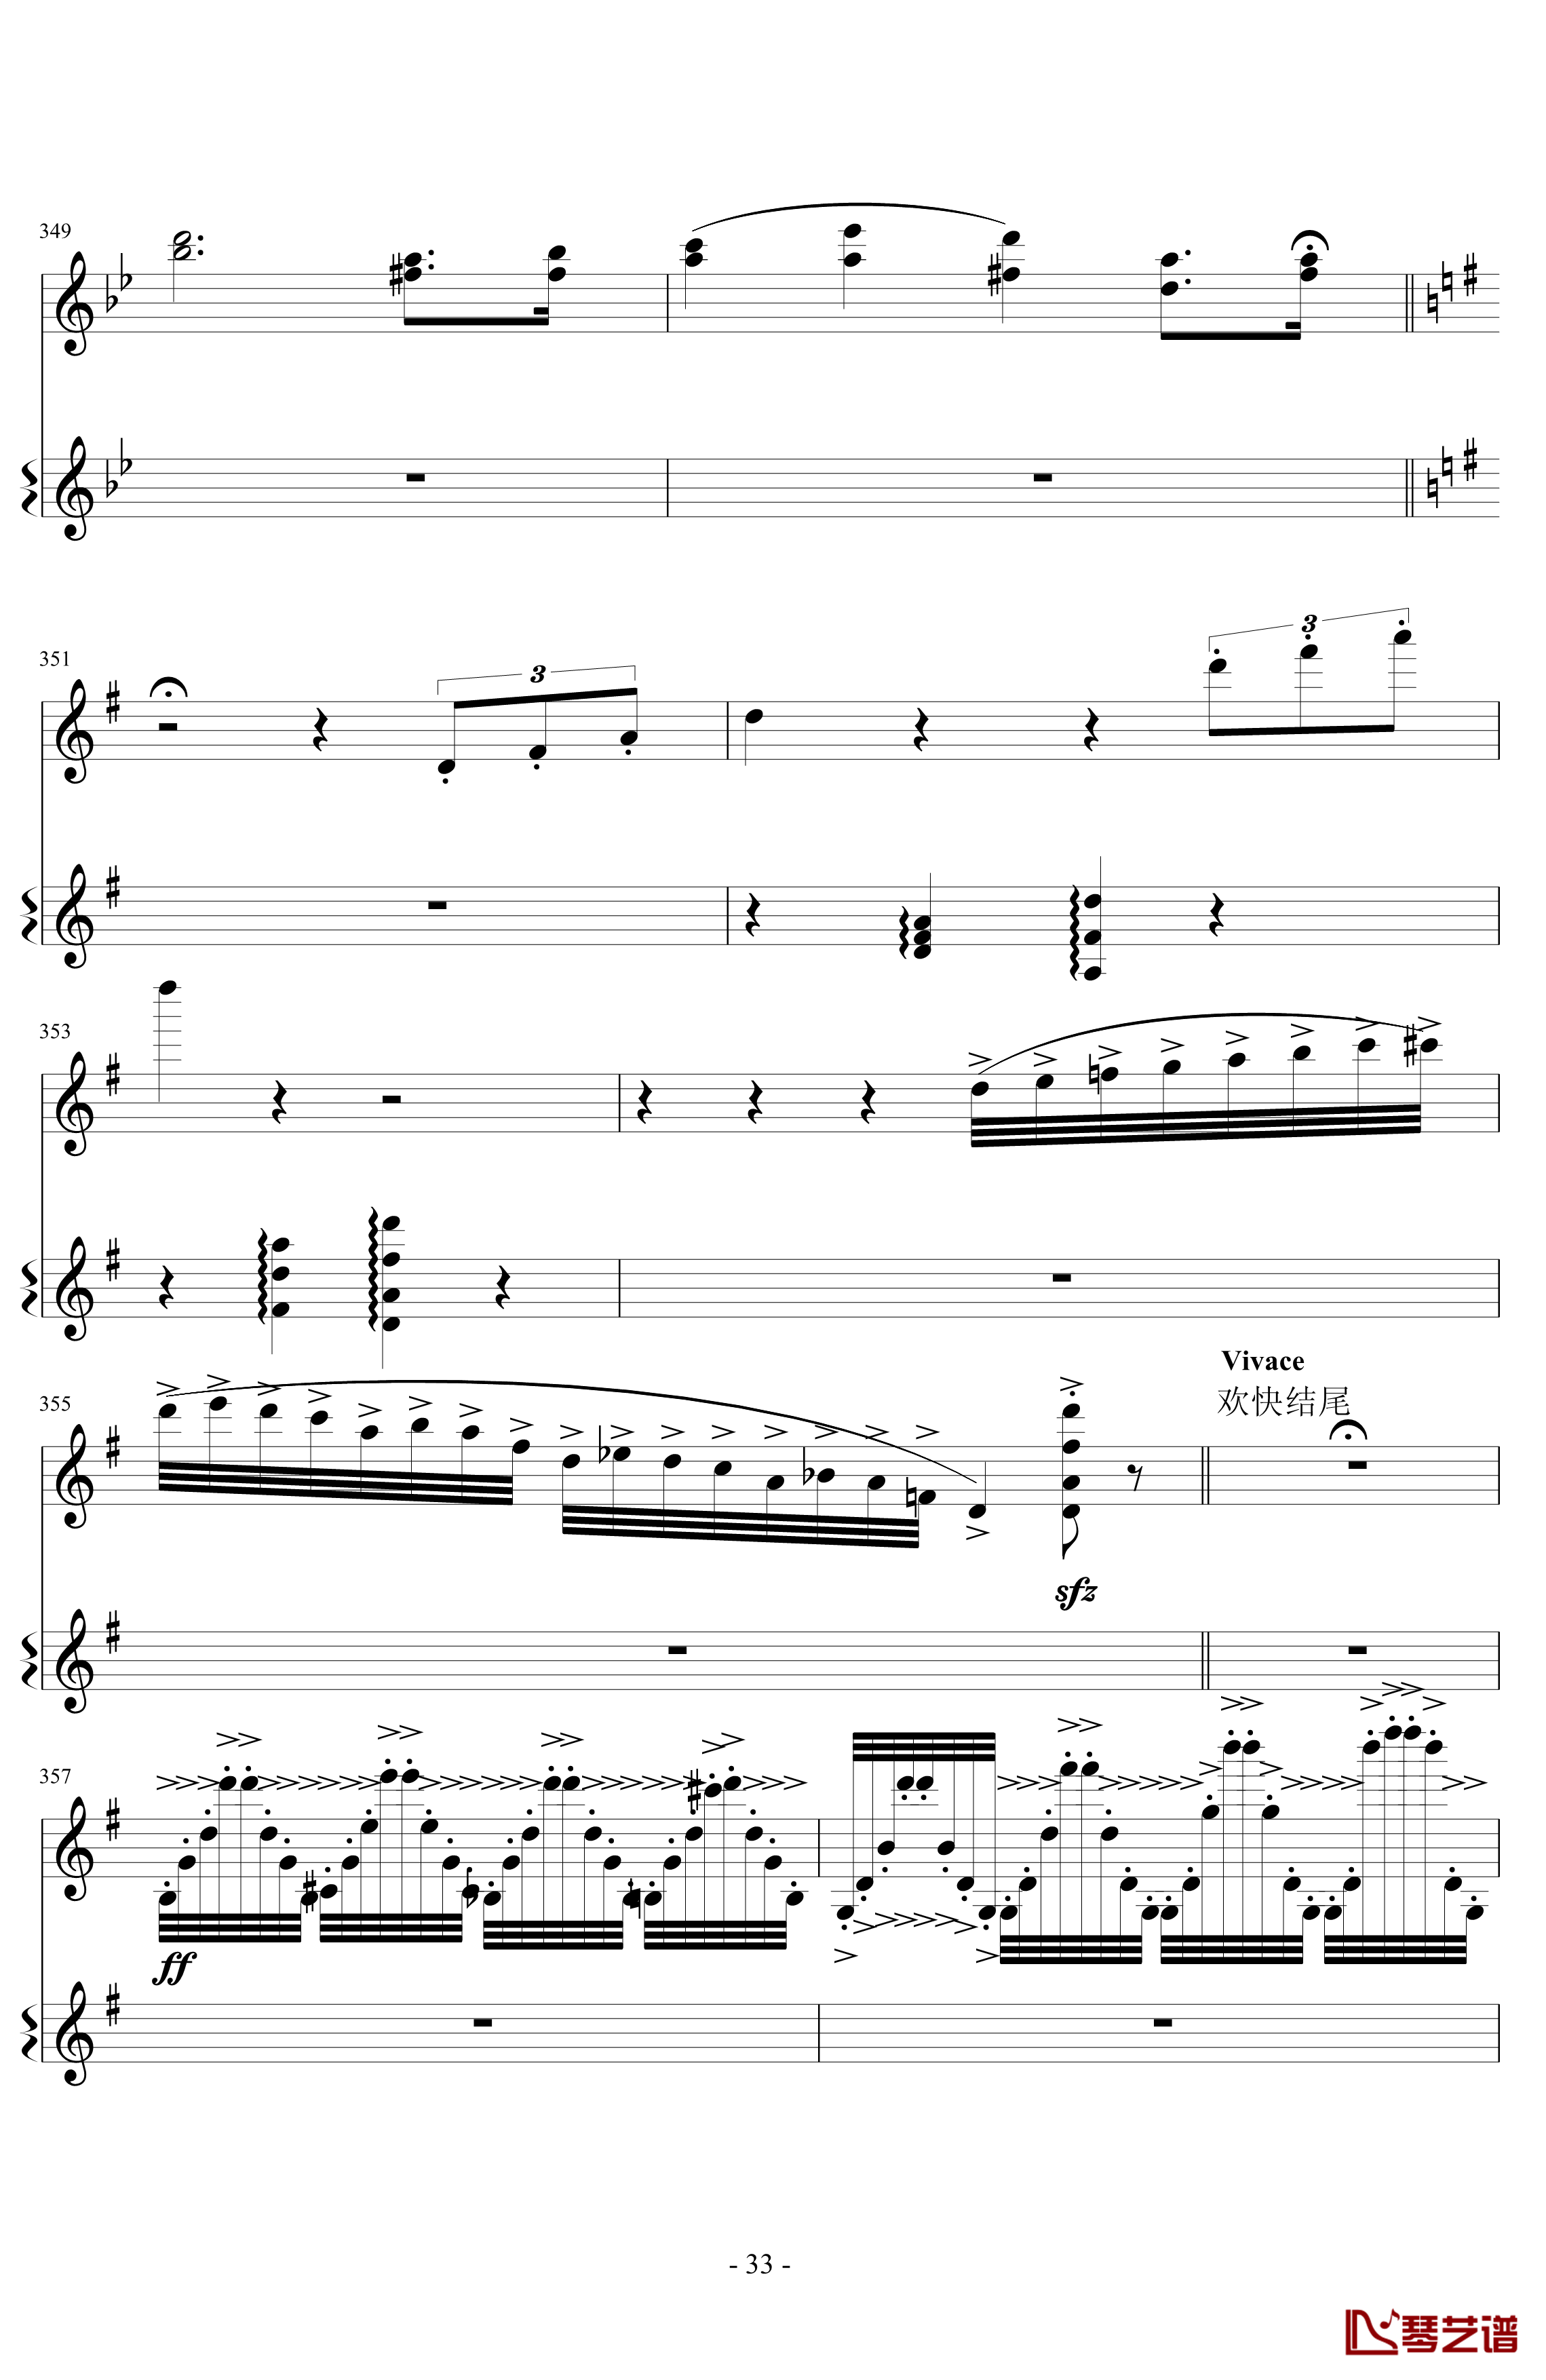 意大利国歌变奏曲钢琴谱-DXF33